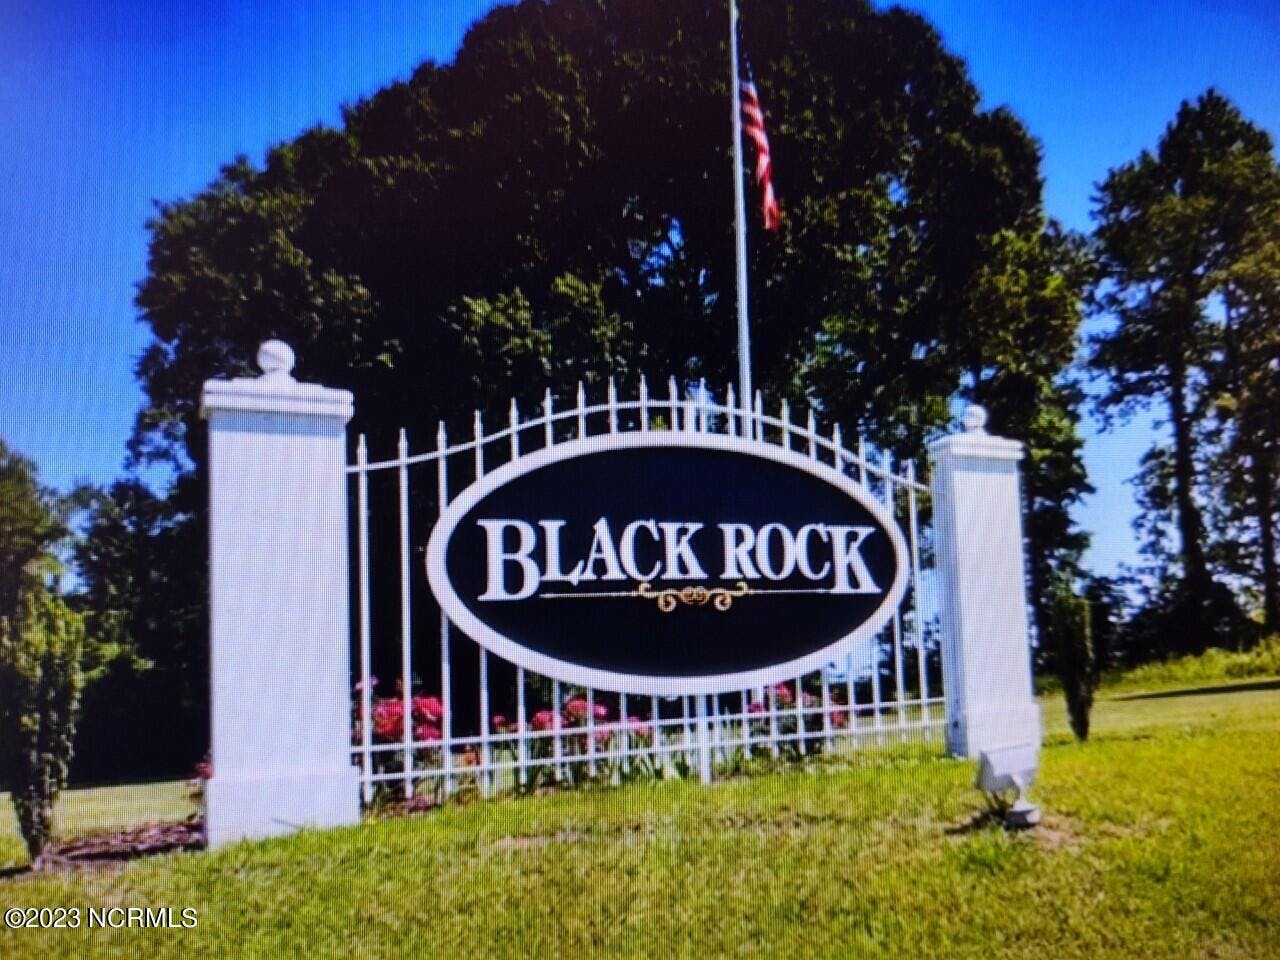 Black Rock entry sign